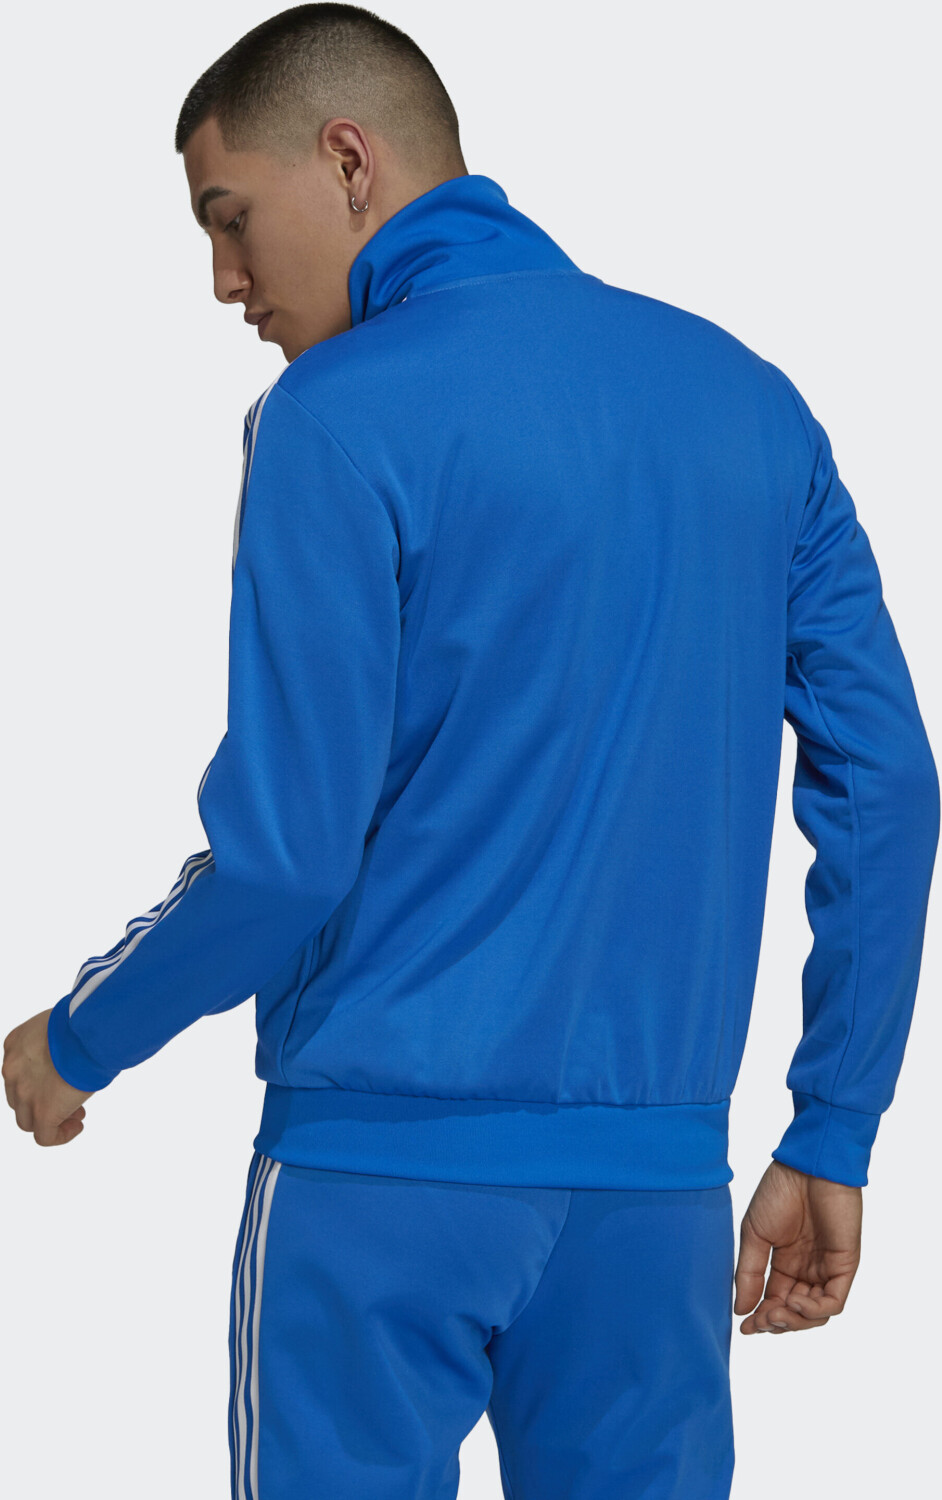 Adidas adicolor Classics € Beckenbauer Originals Jacket blue 62,10 Primeblue bei ab | bird Preisvergleich (H09113)